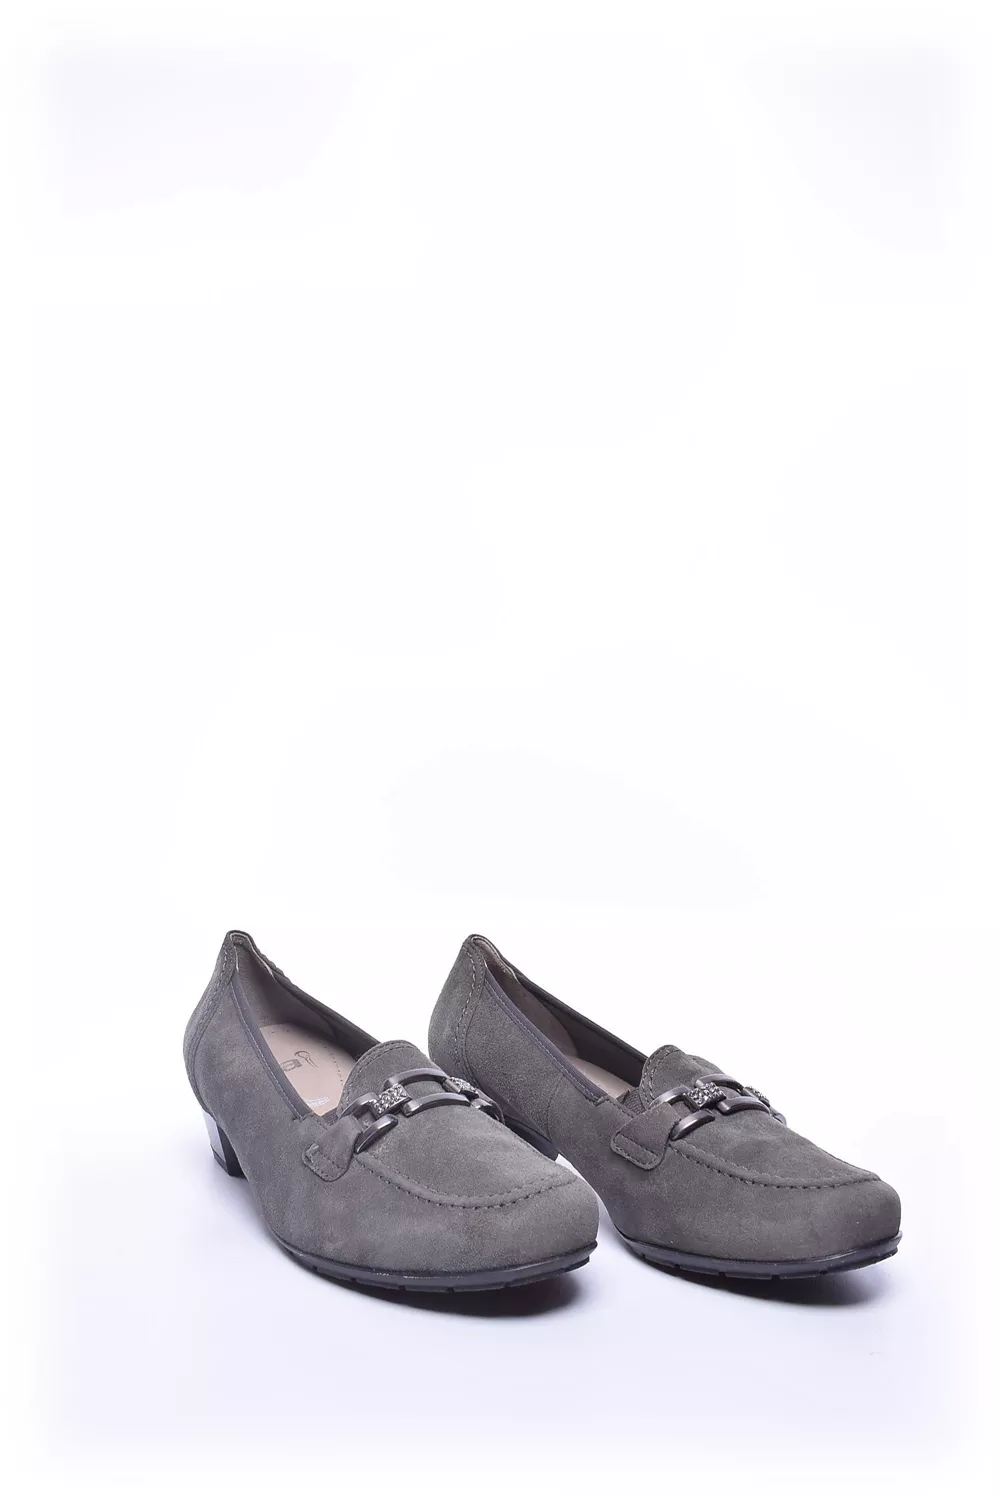 Pantofi dama [2]